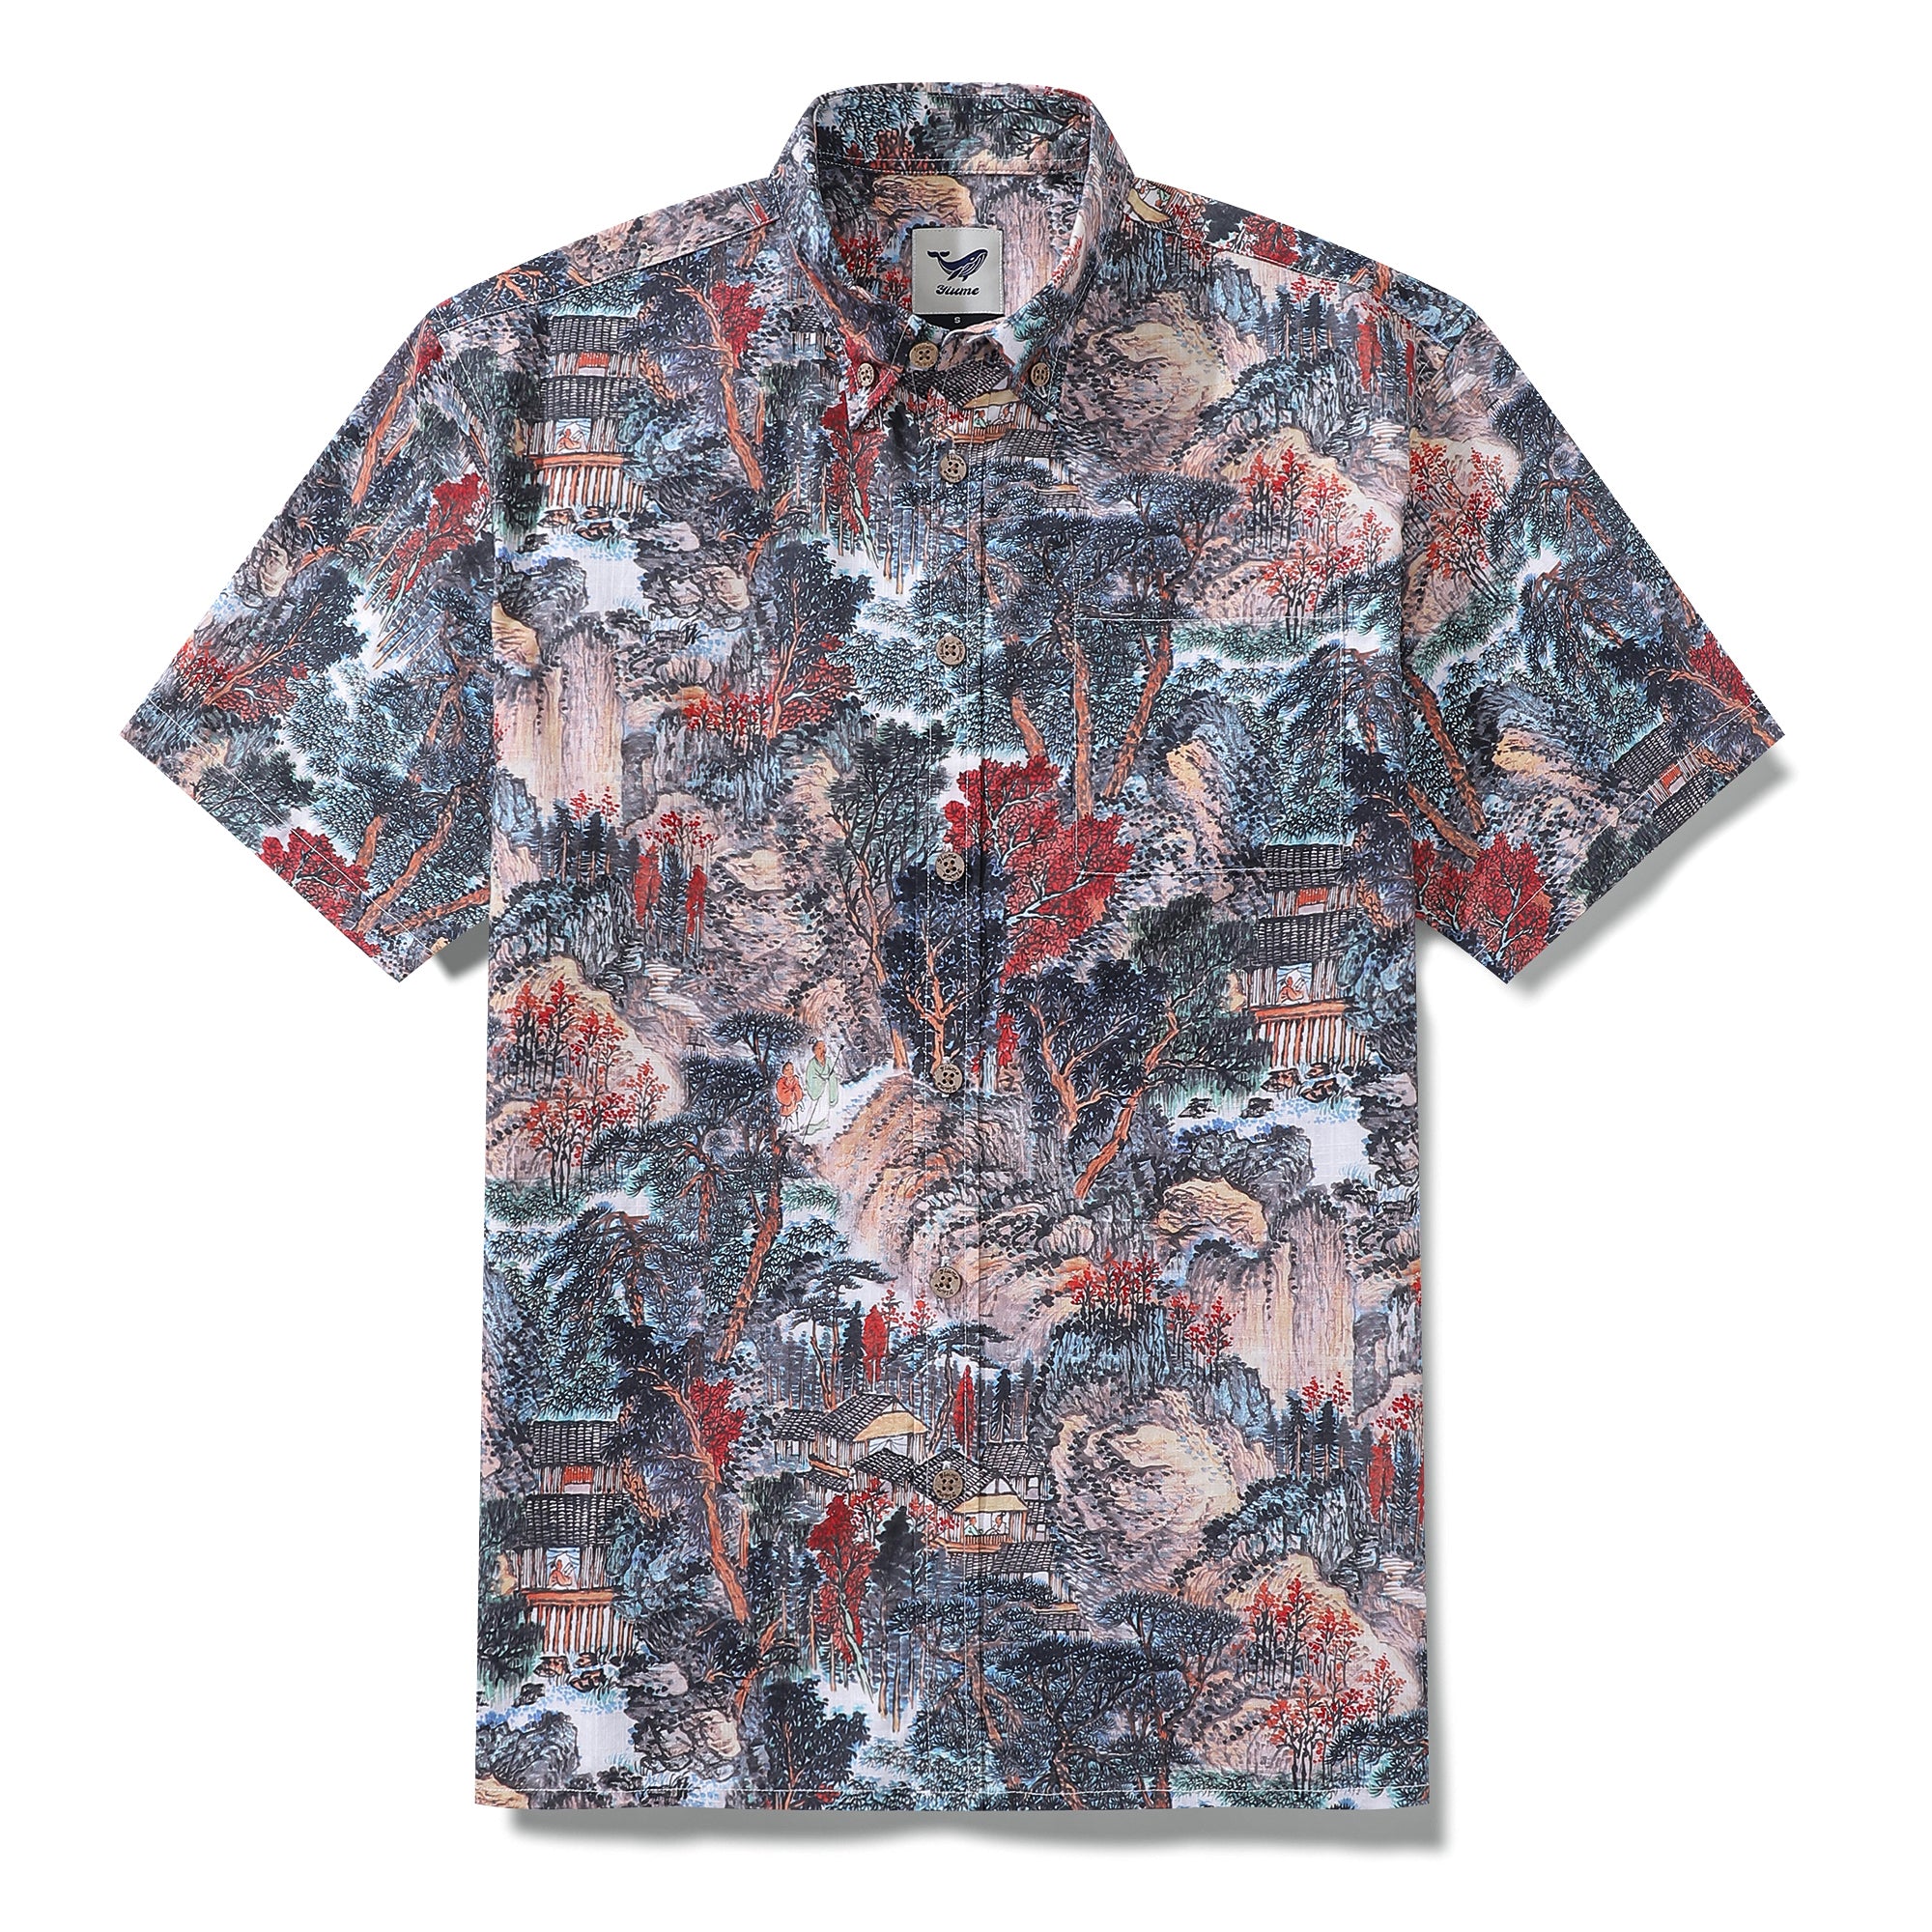 Camisa hawaiana para hombre Camisa Aloha vintage de manga corta de algodón con estampado Majesty of the Mountains de los años 50